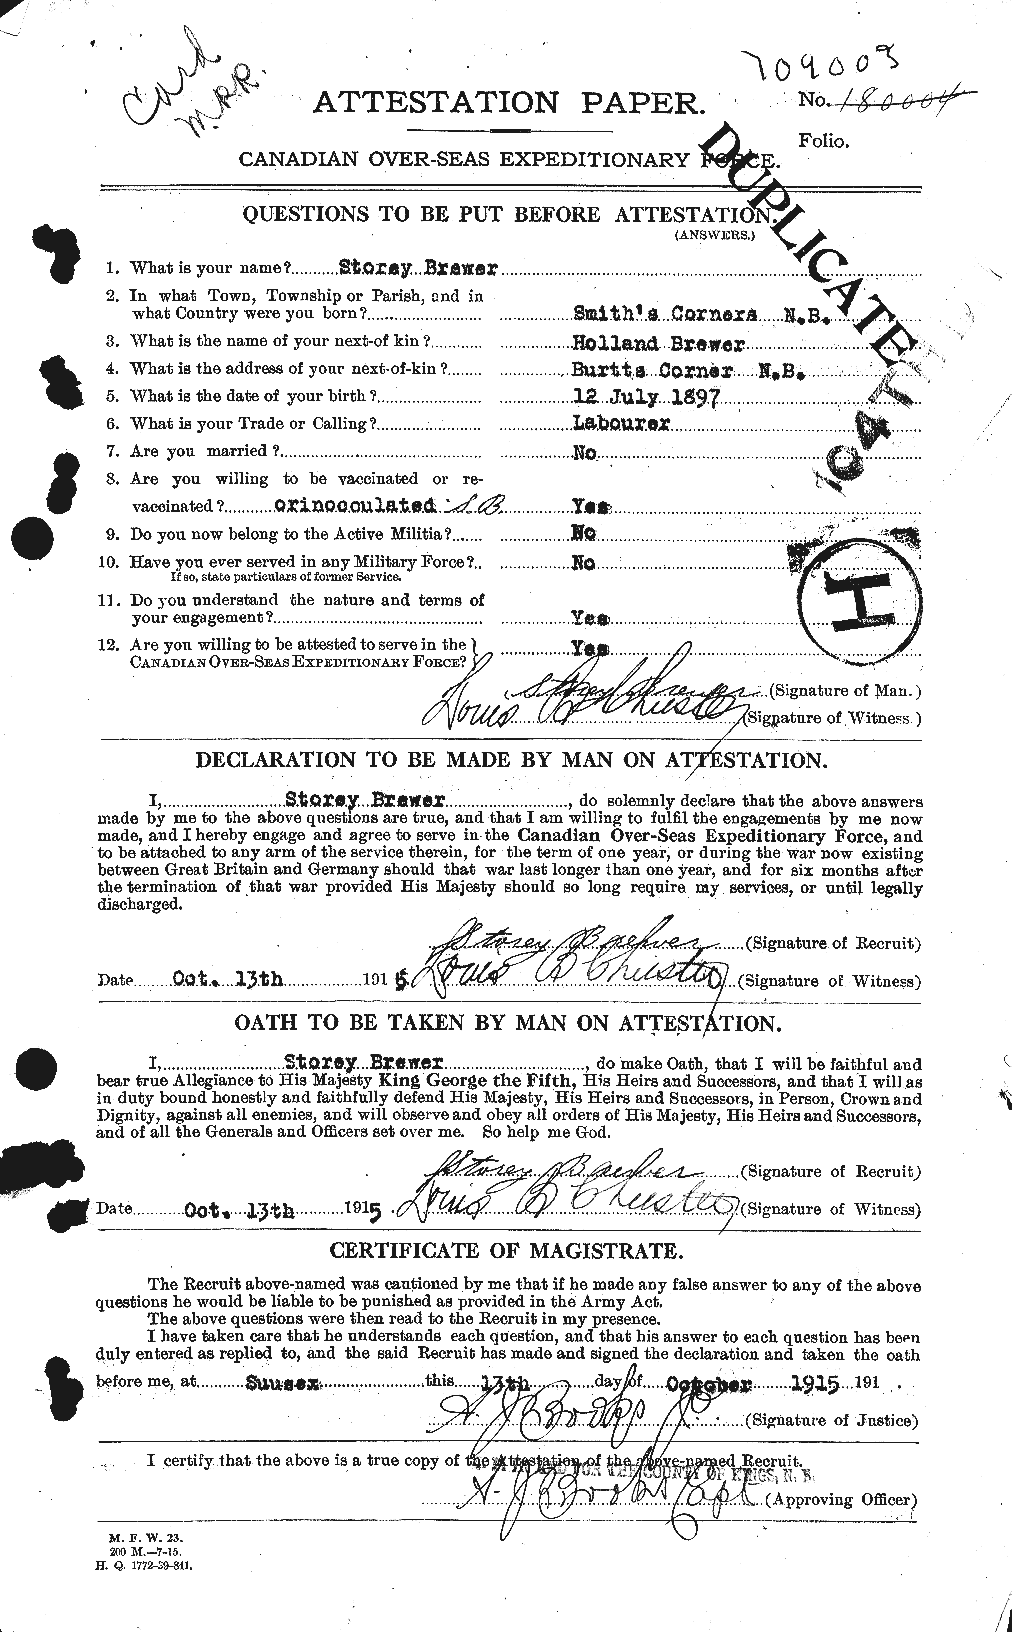 Dossiers du Personnel de la Première Guerre mondiale - CEC 260805a